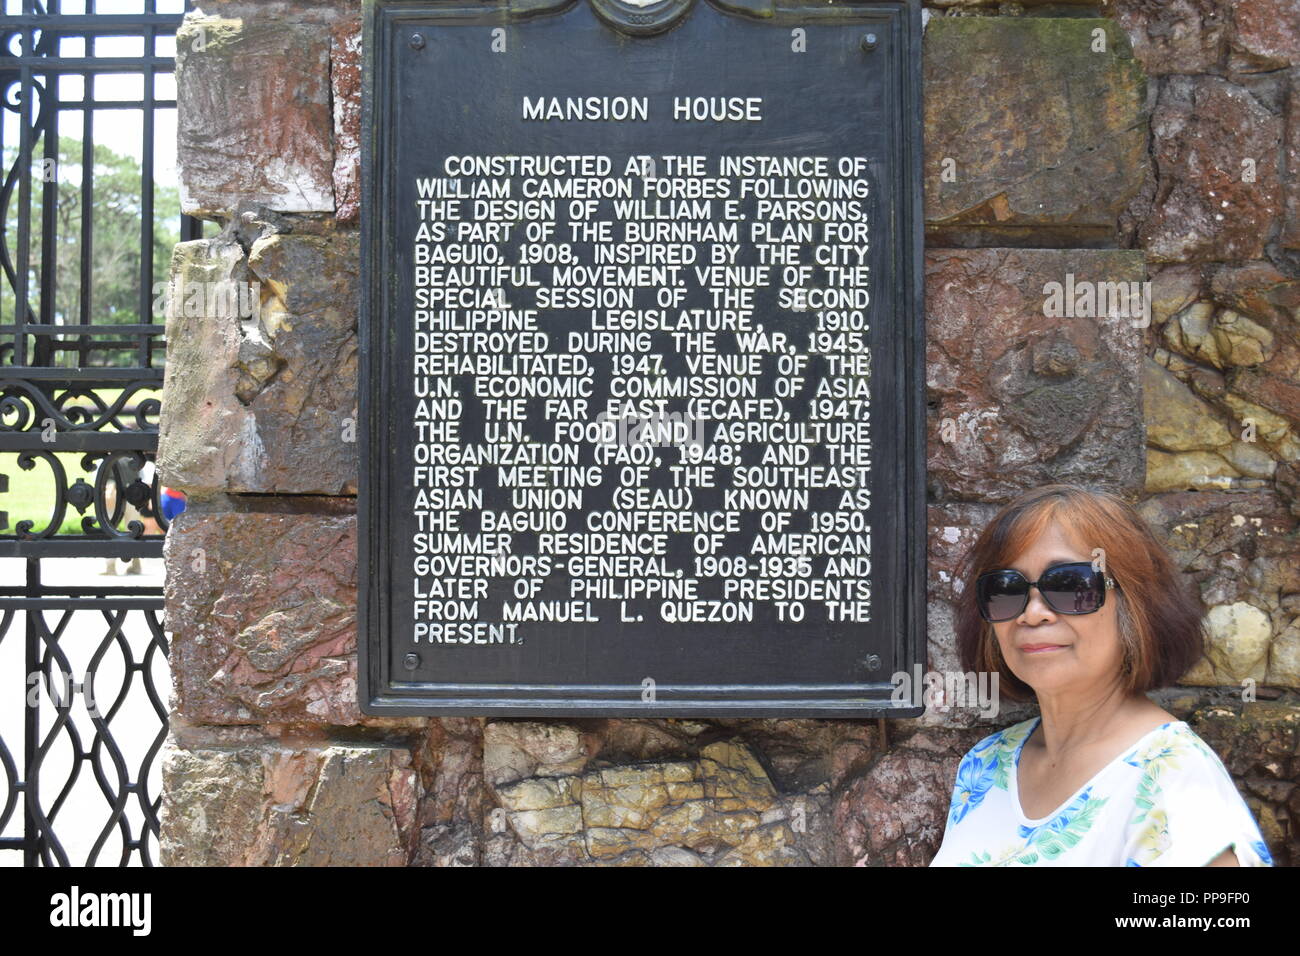 Il Mansion: la Casa Presidenziale a Baguio è stata ufficializzata la residenza estiva dei presidenti delle Filippine dal Commonwealth Foto Stock